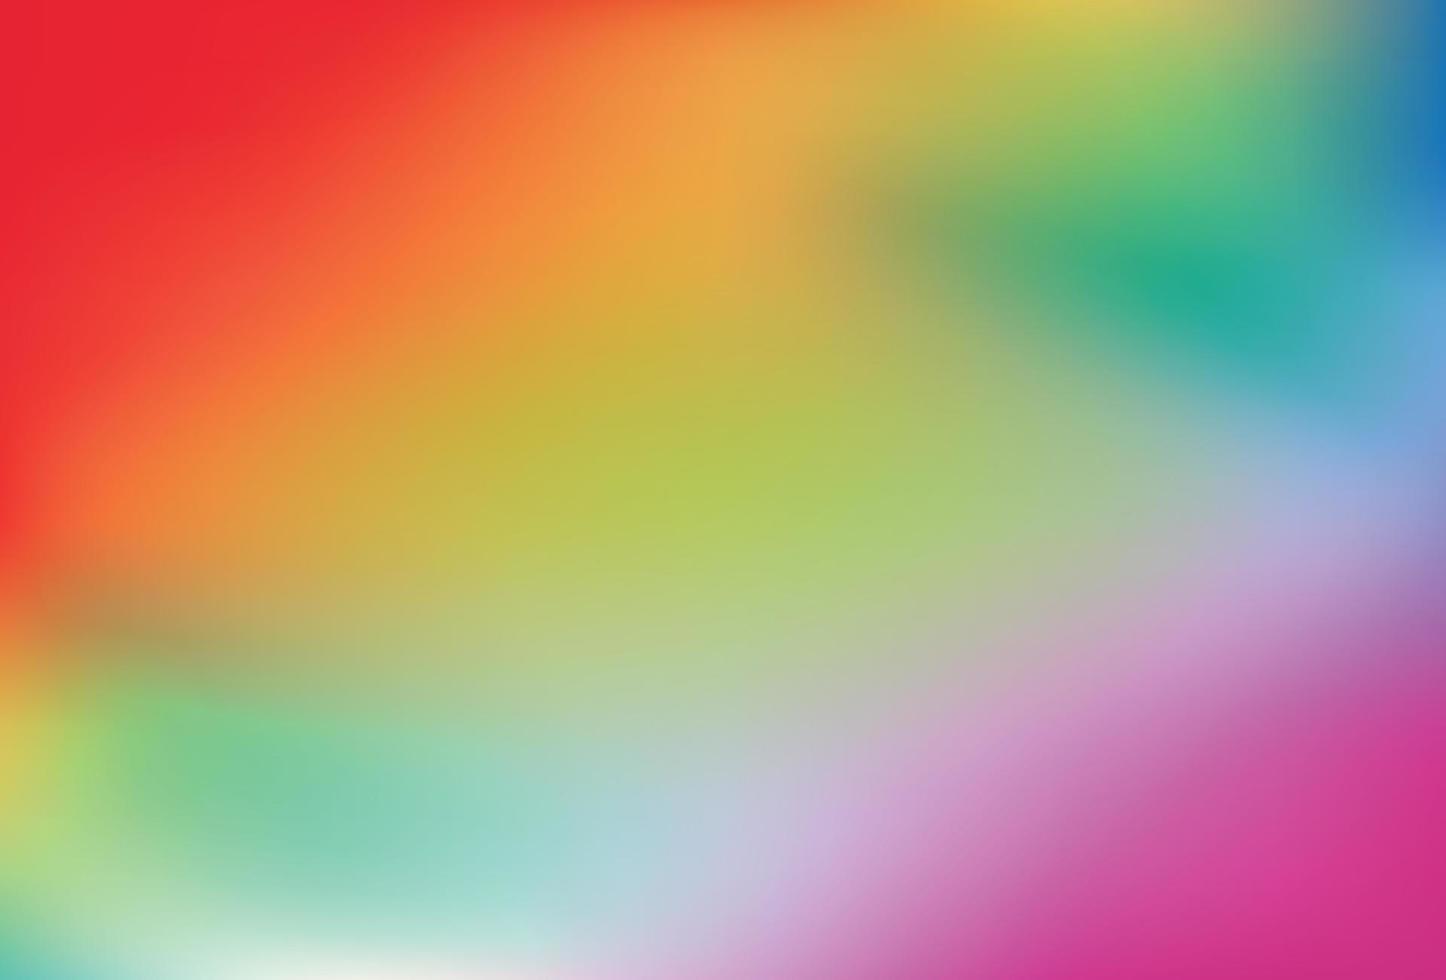 gladde en wazige regenboog gradiënt mesh achtergrond. vector